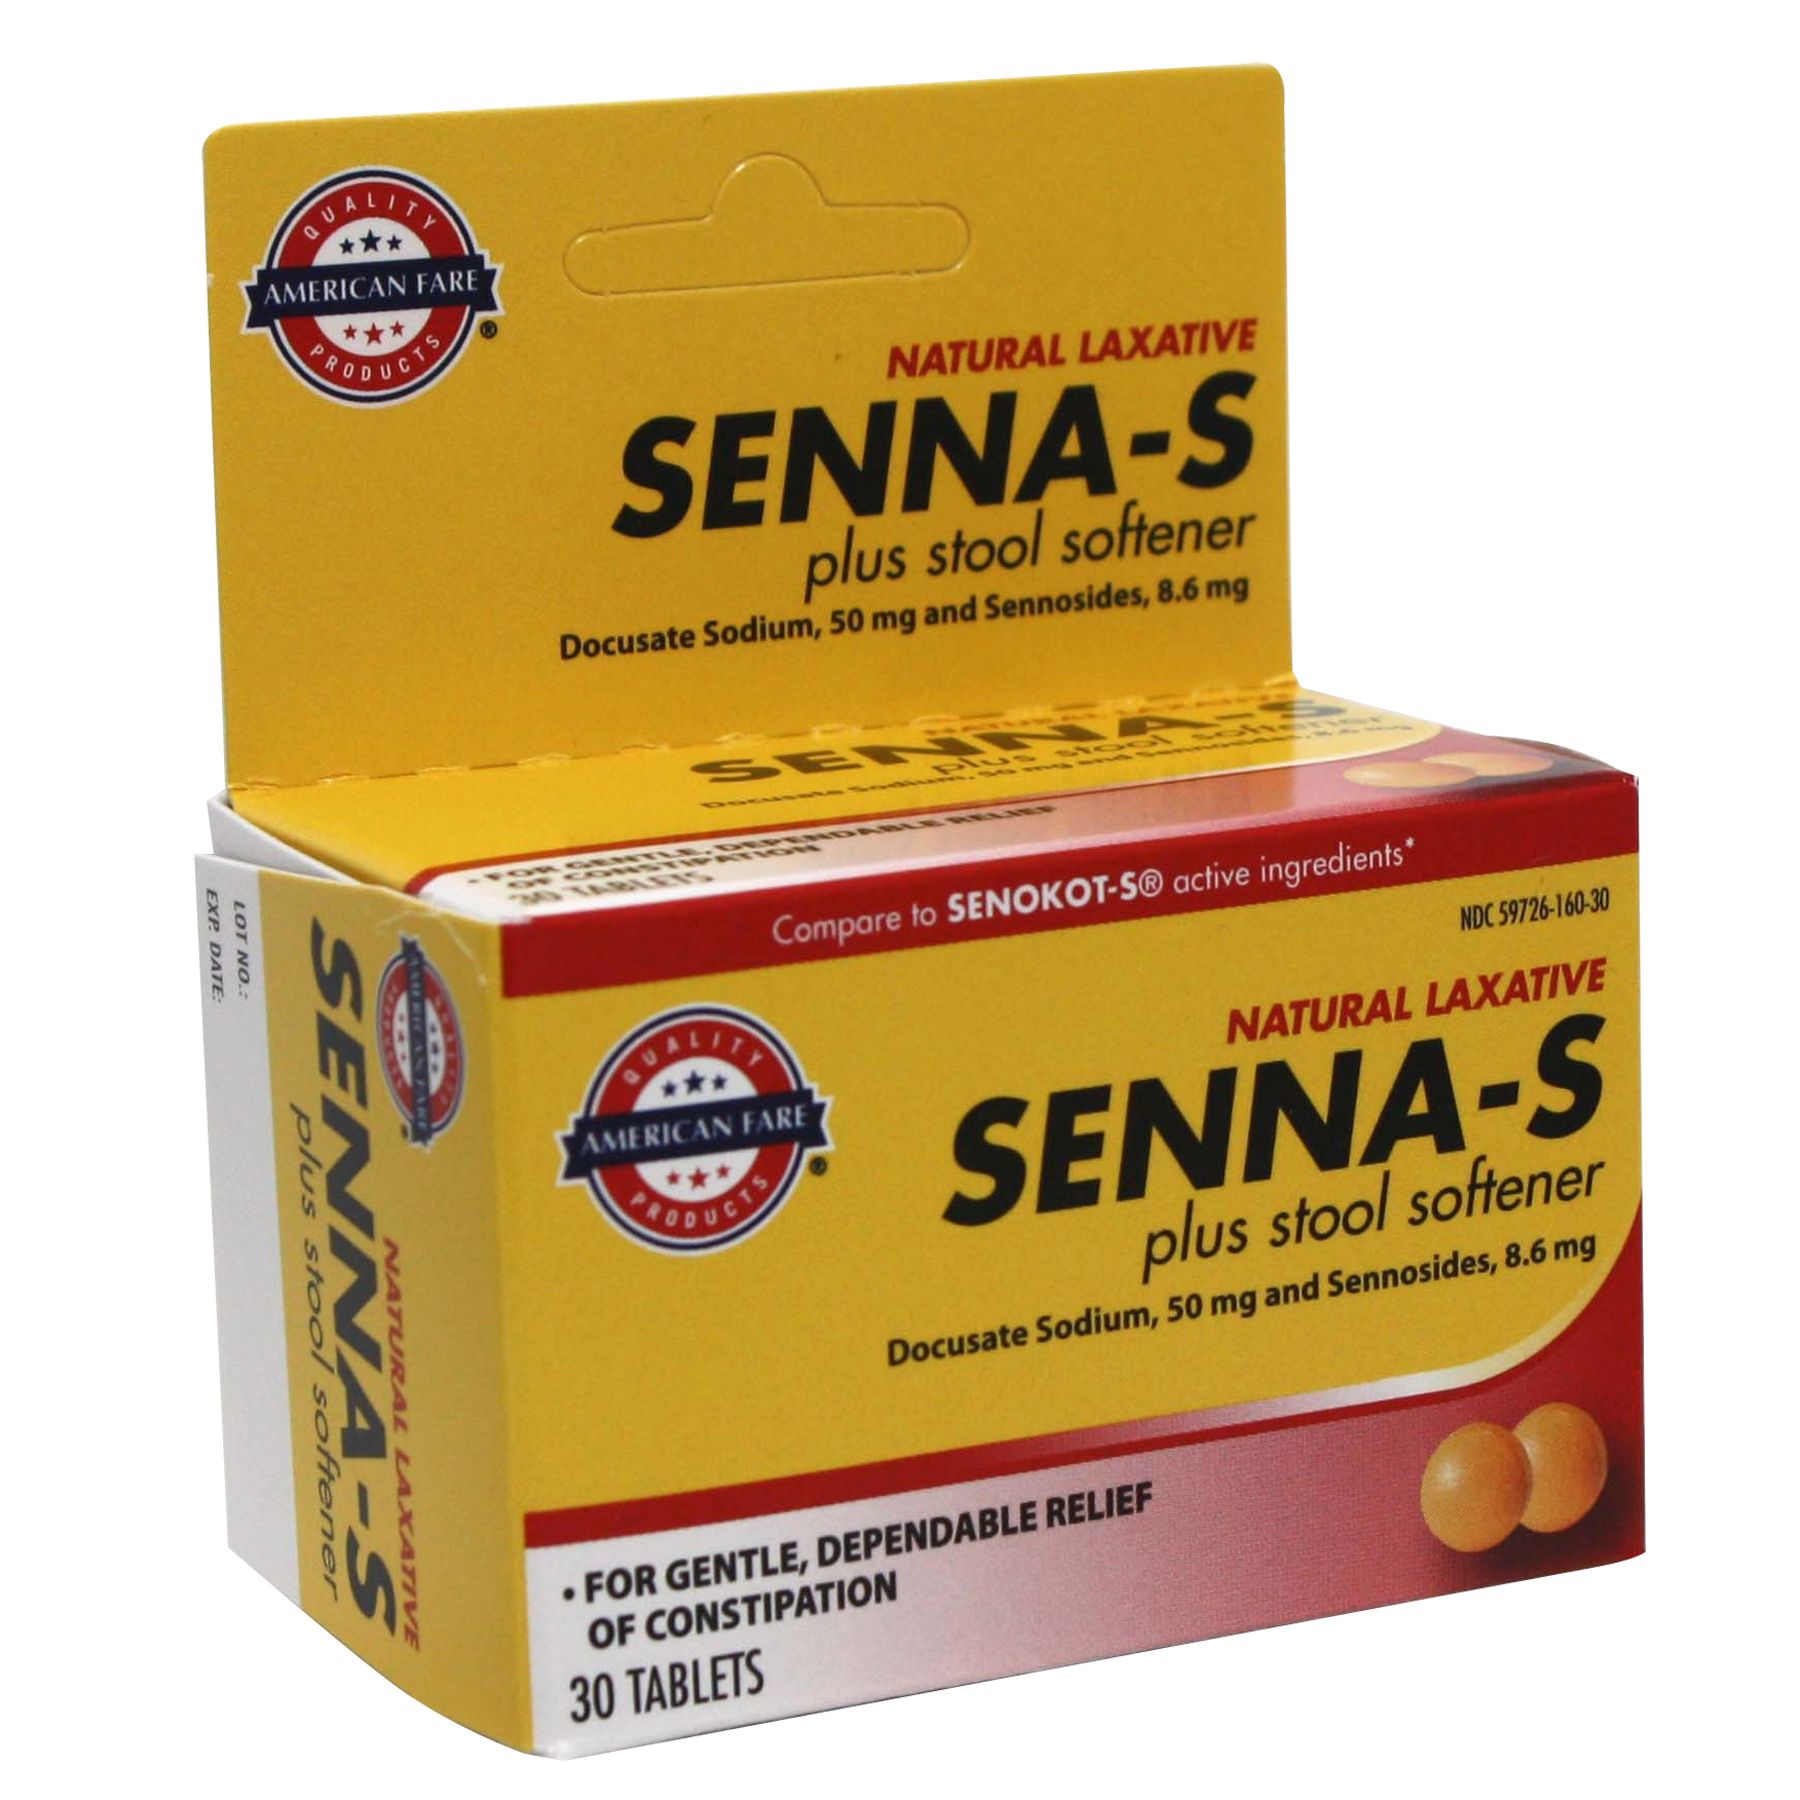 American Fare Senna Laxative Tablets 30 Count Box